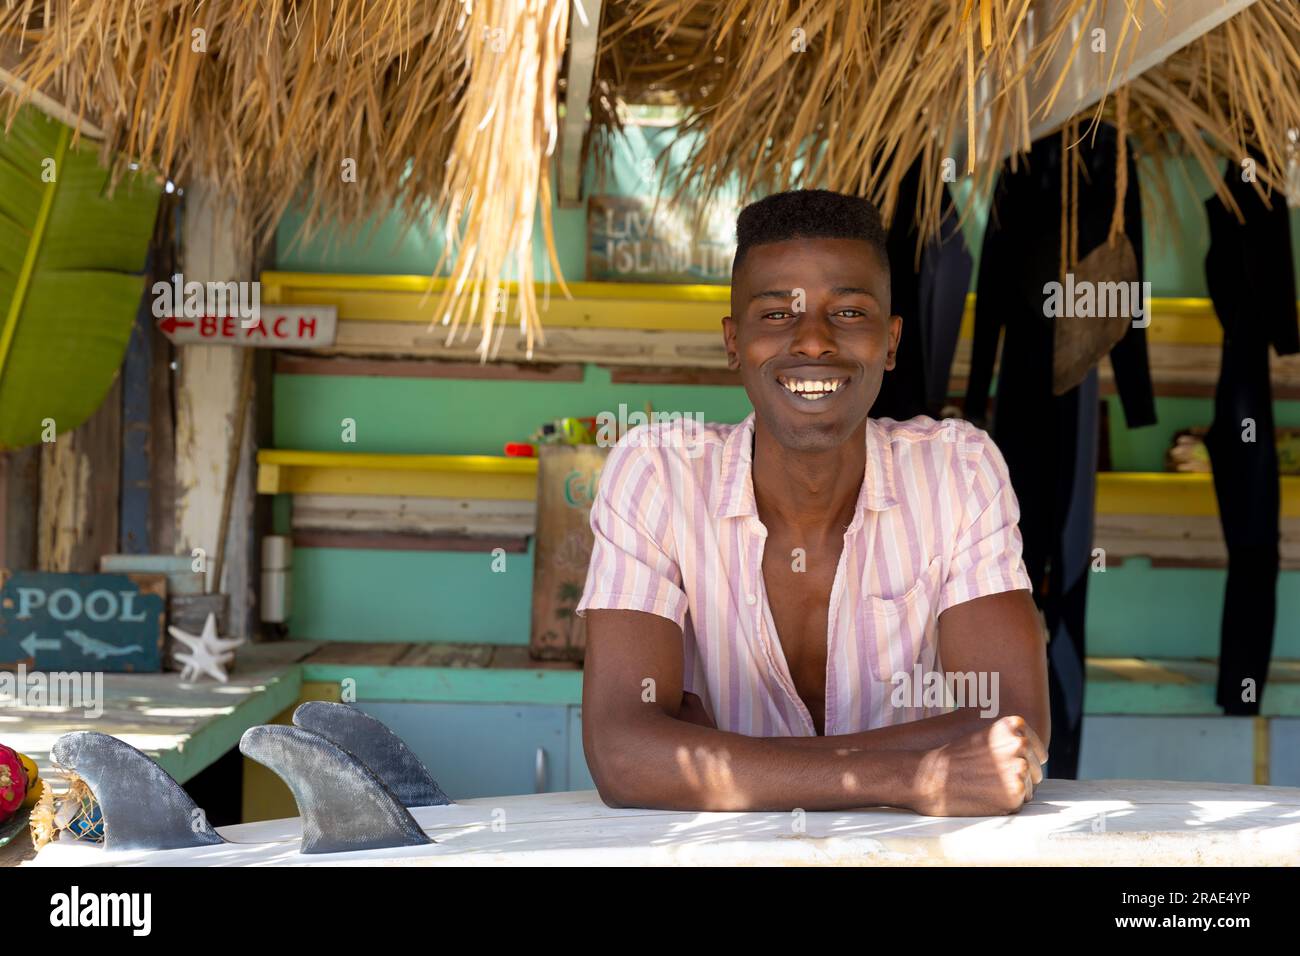 Ritratto di un uomo afro-americano seduto dietro il bancone della baracca da spiaggia di noleggio surf Foto Stock